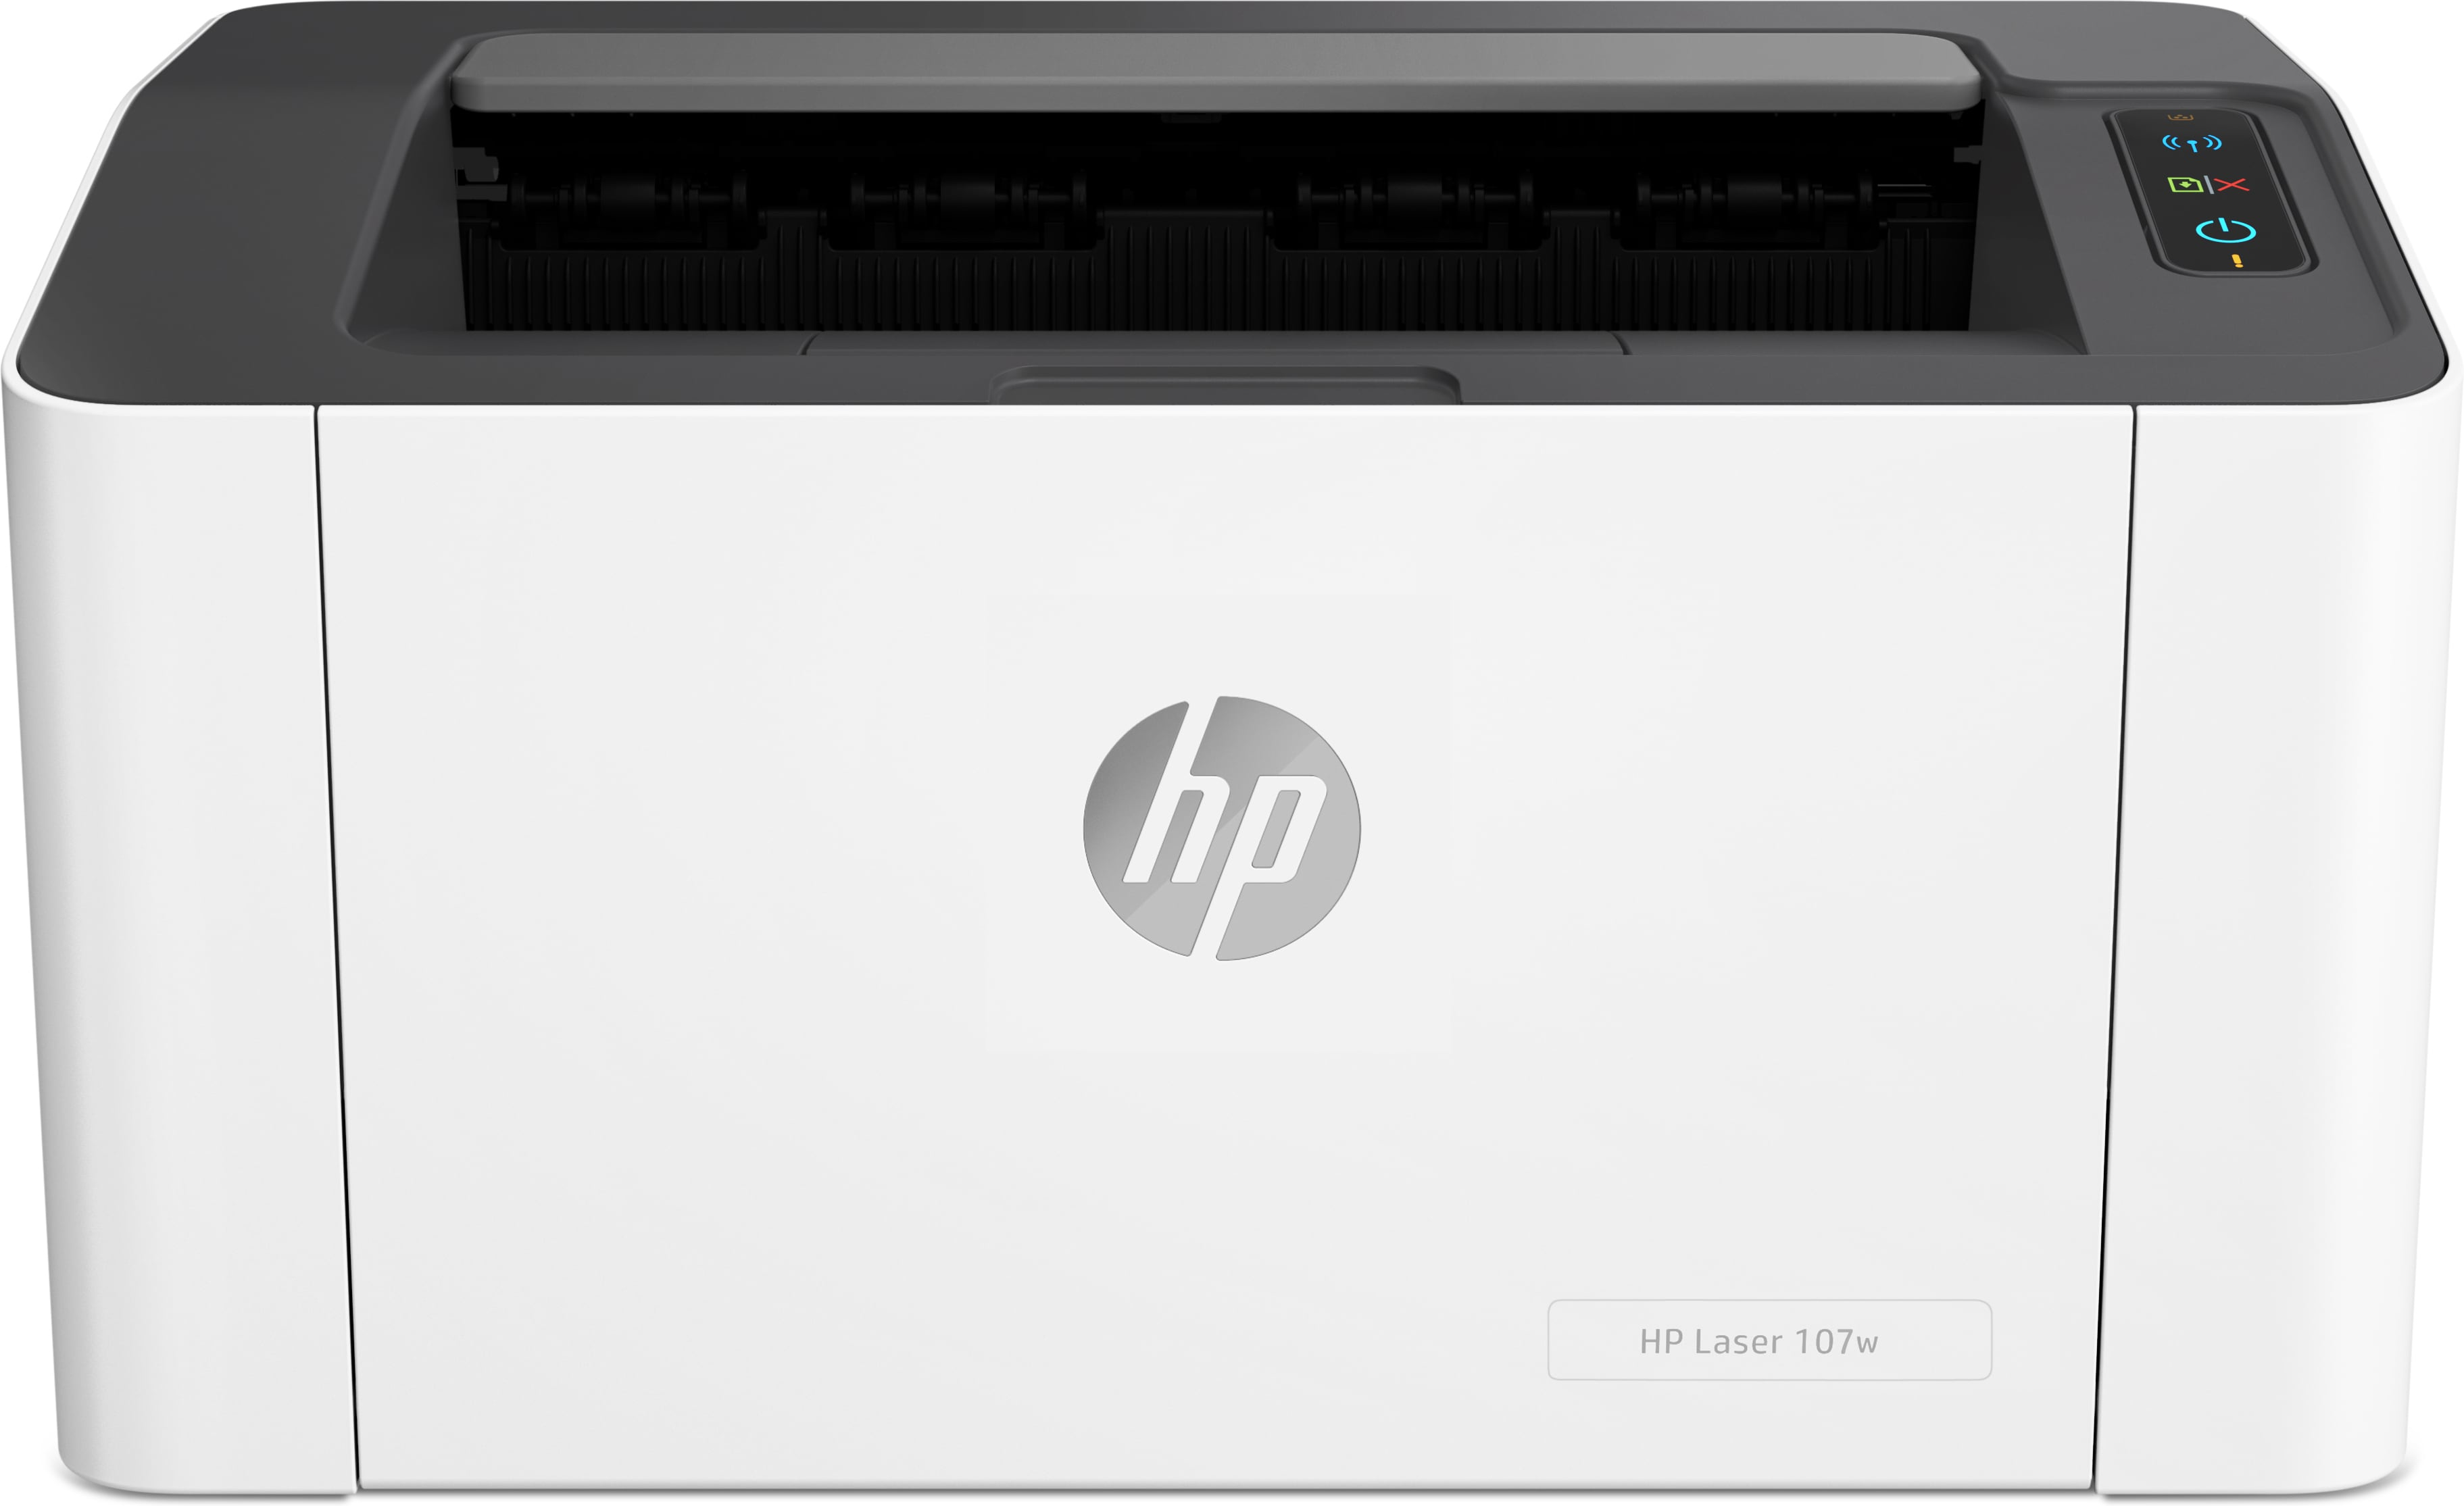 HP Laser 107w, Bianco e nero, Stampante per Piccole e medie